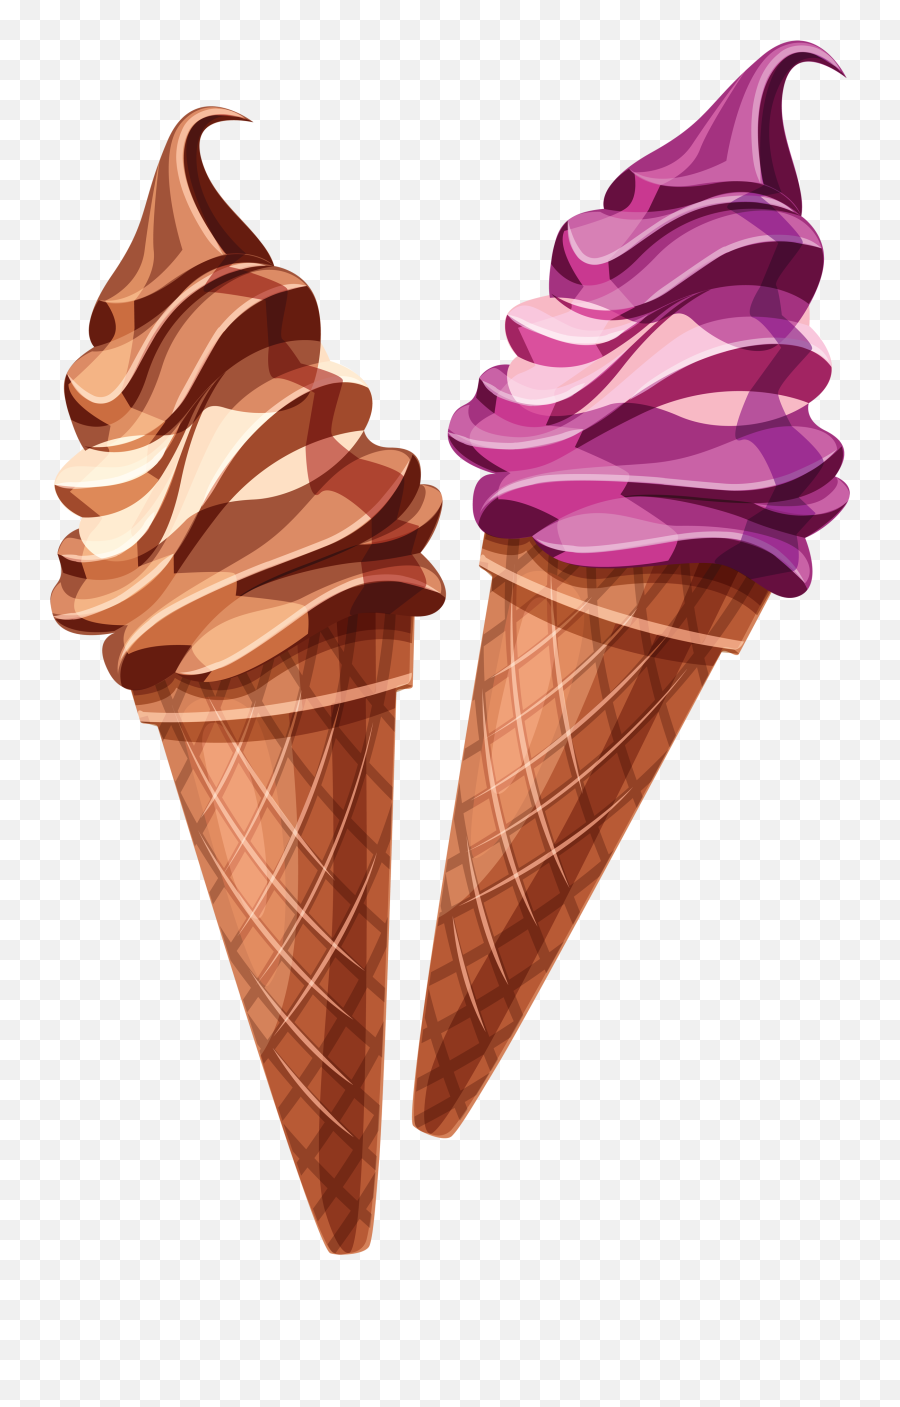 Ice Cream Png Image - Ice Cream Cone Png,Ice Cream Transparent